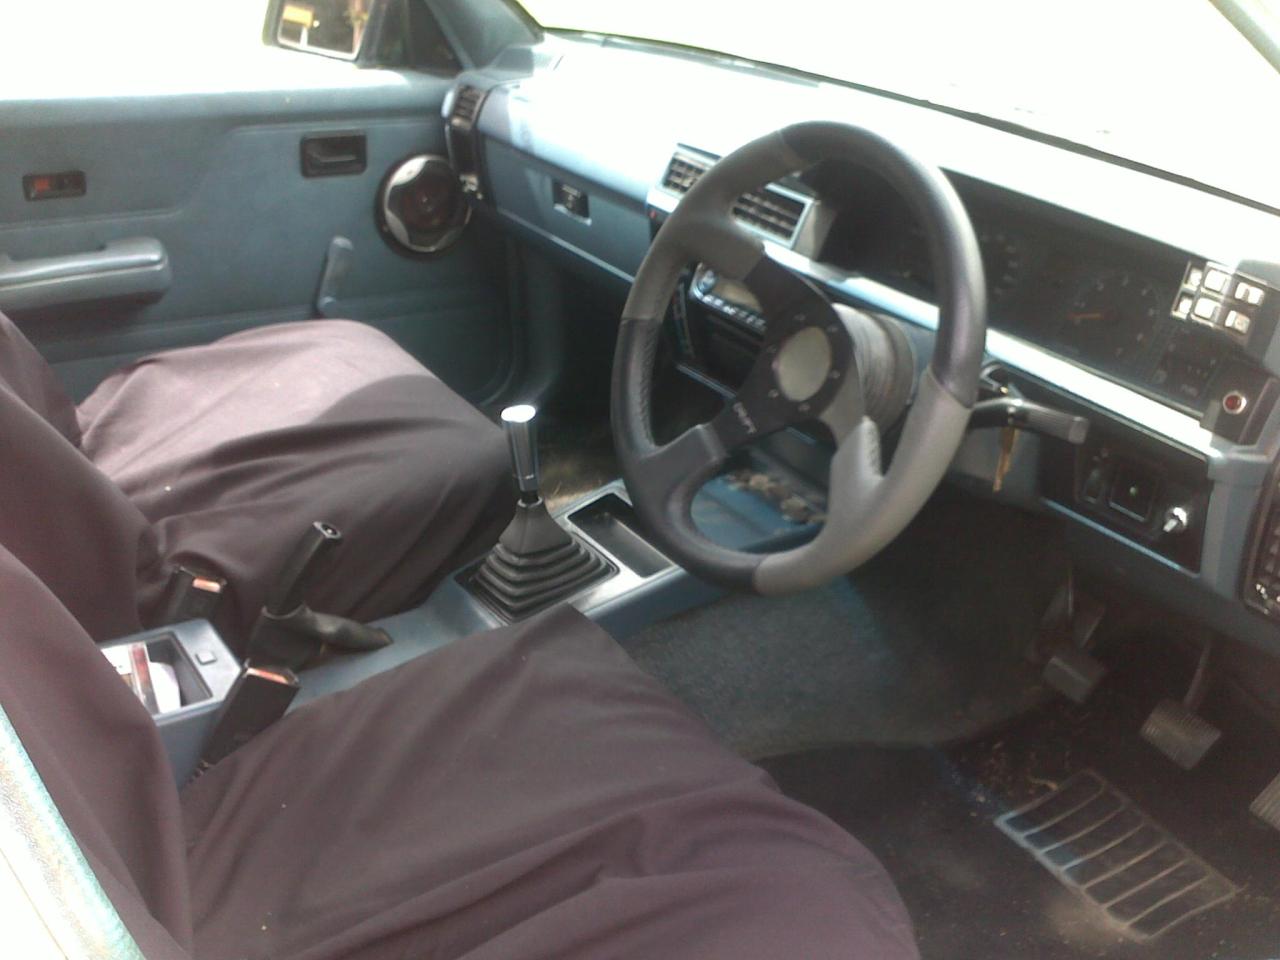  Holden Commodore Vl